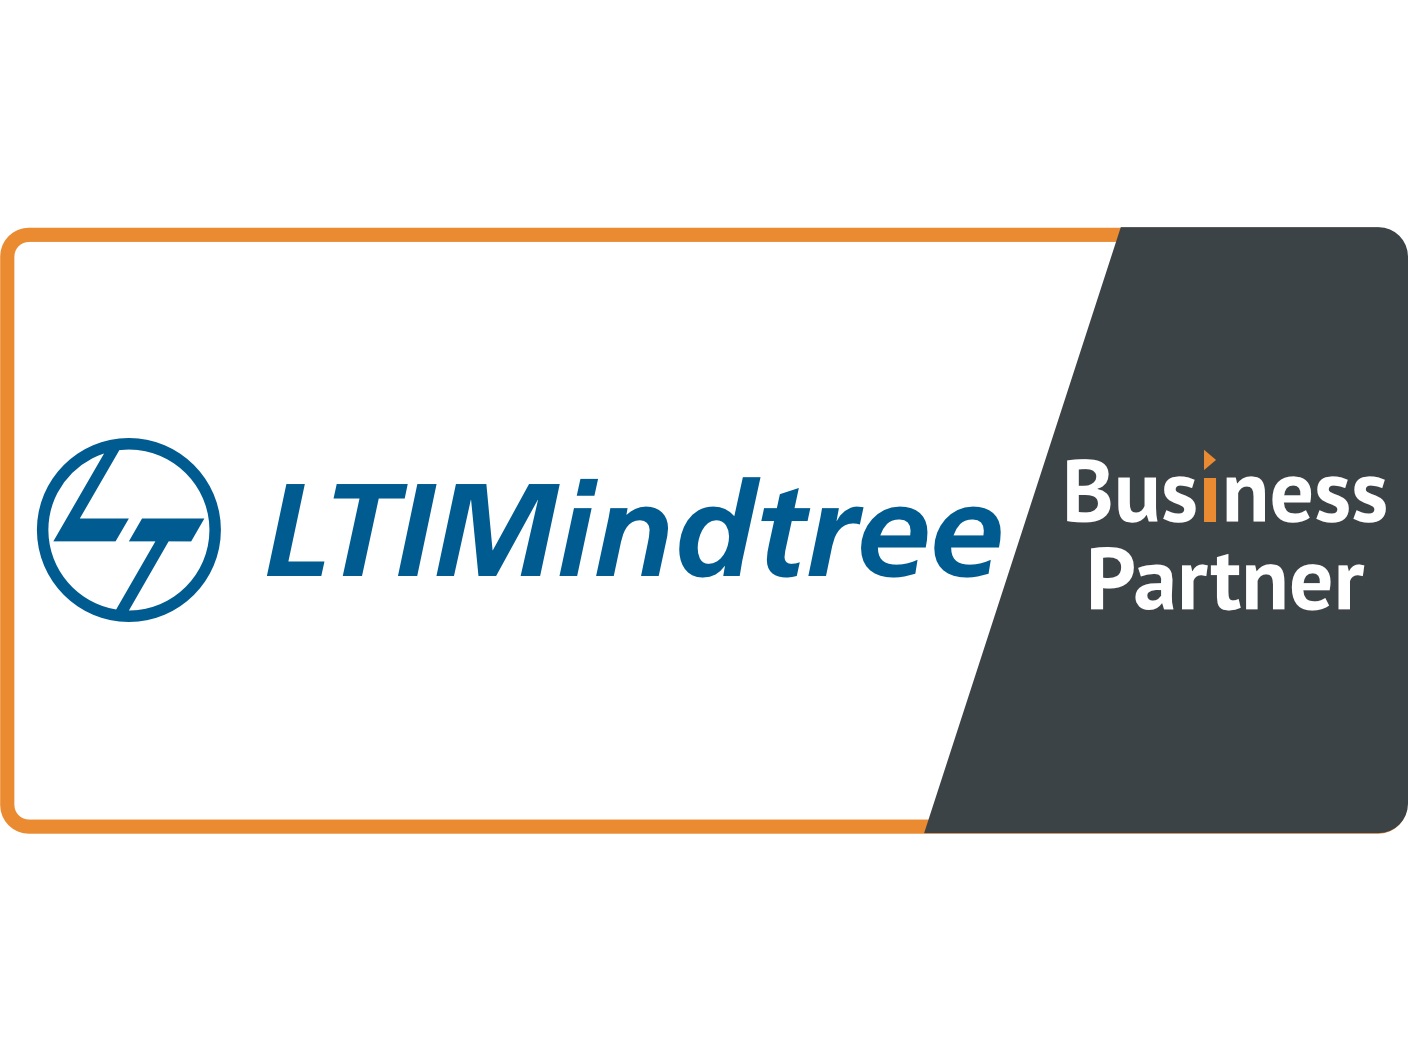 LTIMindtree - Business Partner